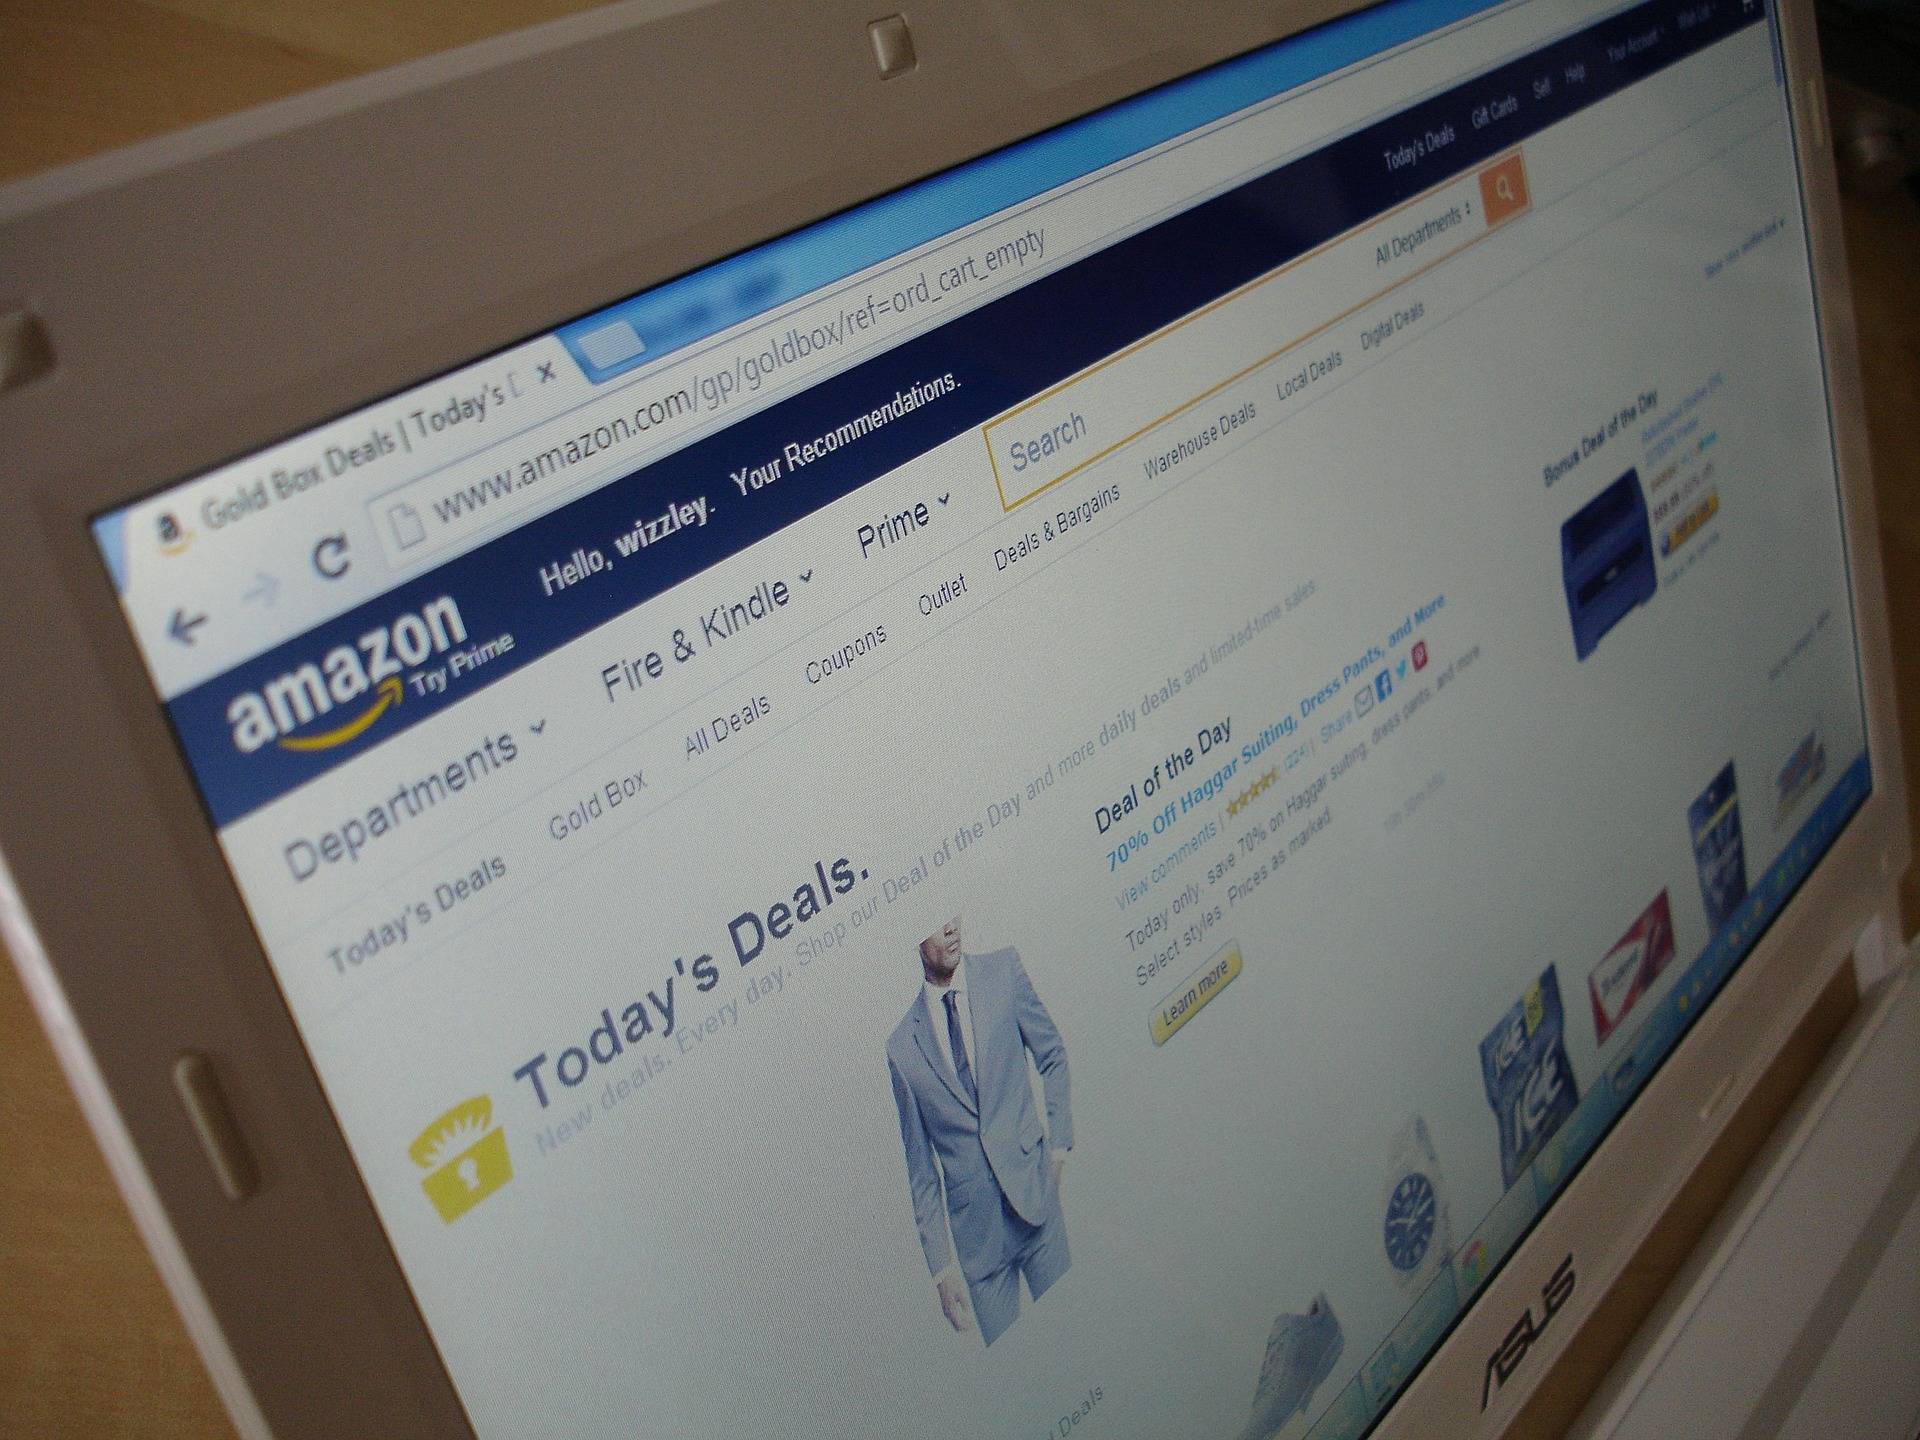 Benefits of selling on Amazon